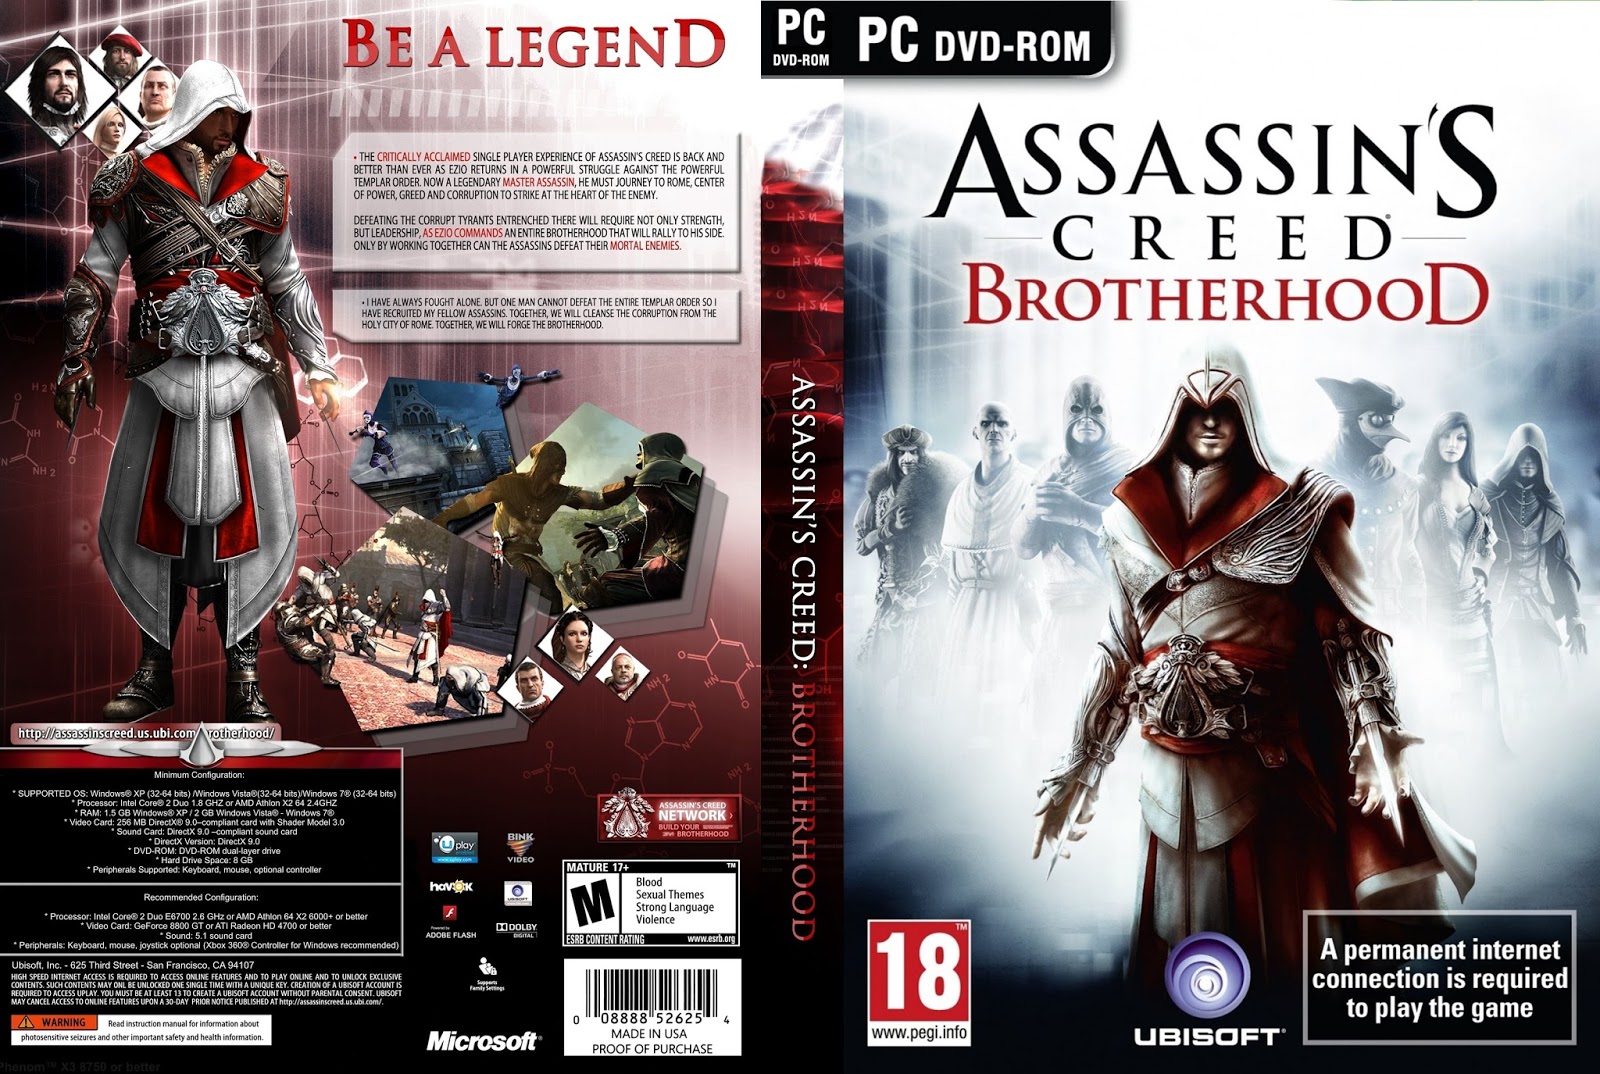 Ассасин крид ключ стим. Ассасин Крид братство крови обложка. Обложка ассасин бразерхуд. Диск с игрой ассасин Крид для ПК. Assassins Creed Brotherhood Xbox 360 обложка.